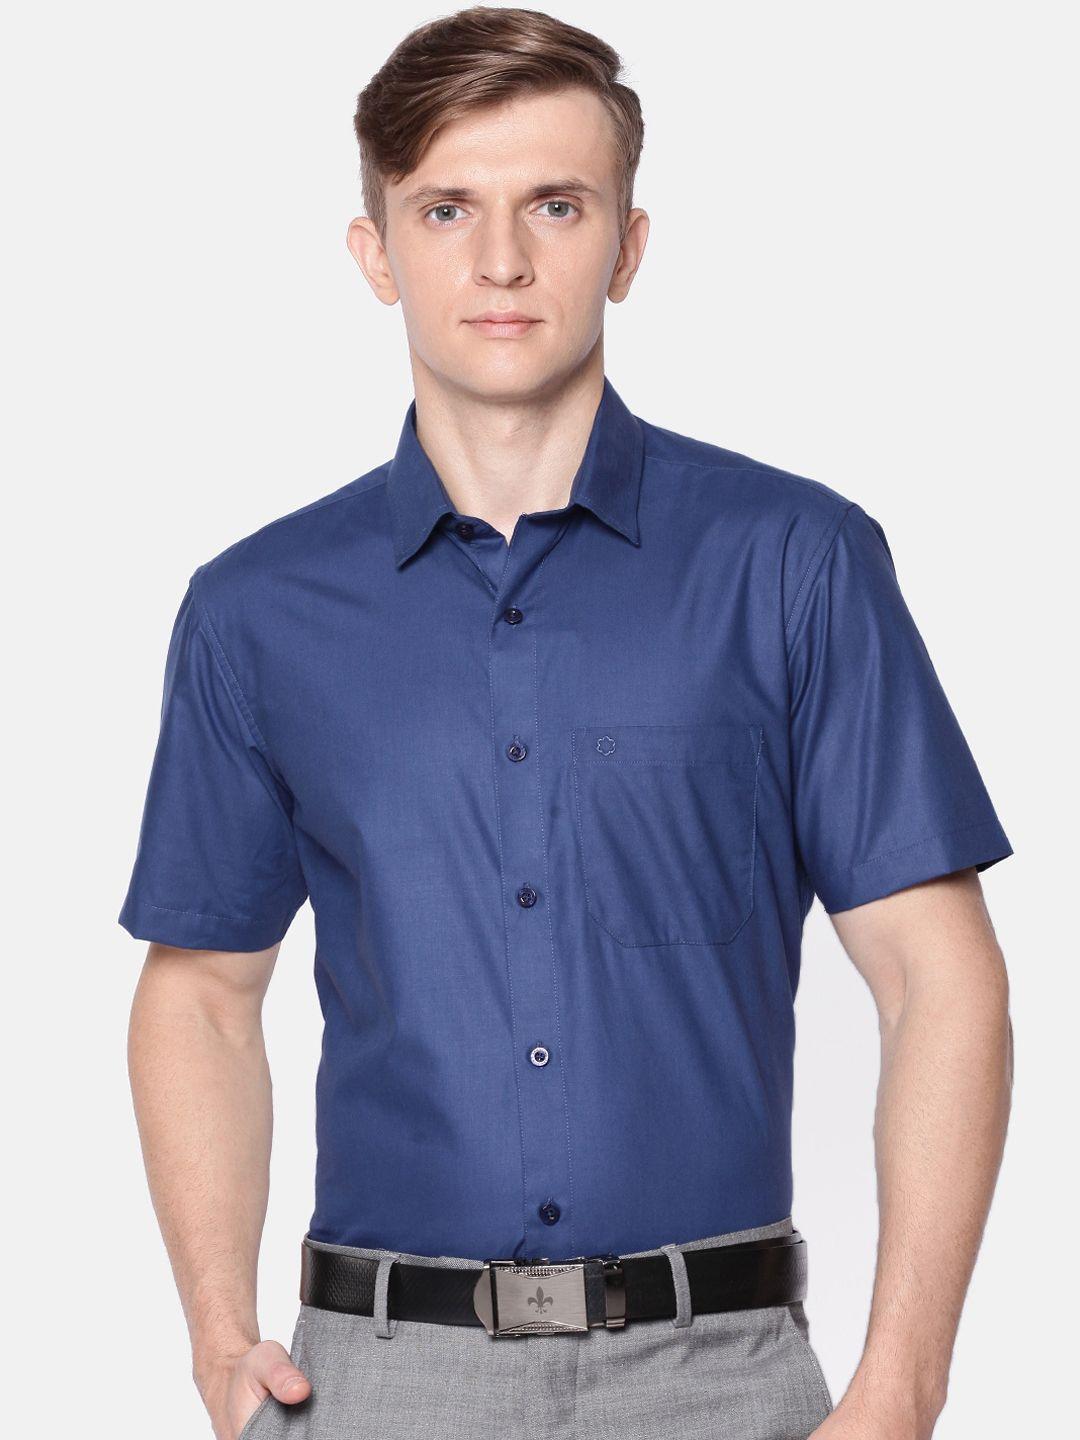 jansons-men-navy-blue-regular-fit-solid-formal-shirt